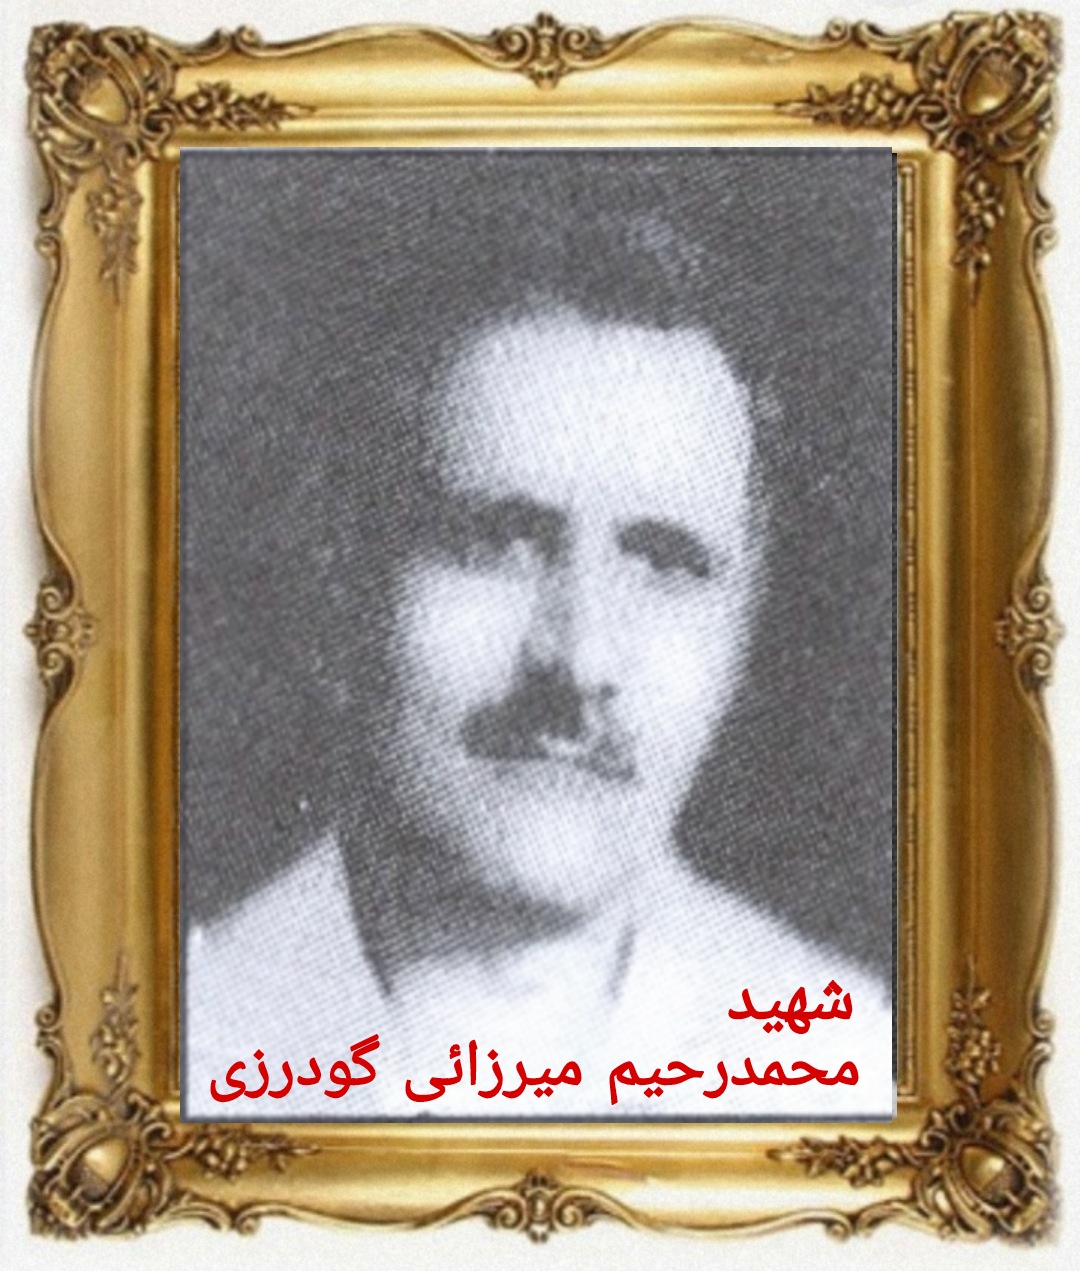 شهید محمدرحیم میرزائی گودرزی - اشترینان